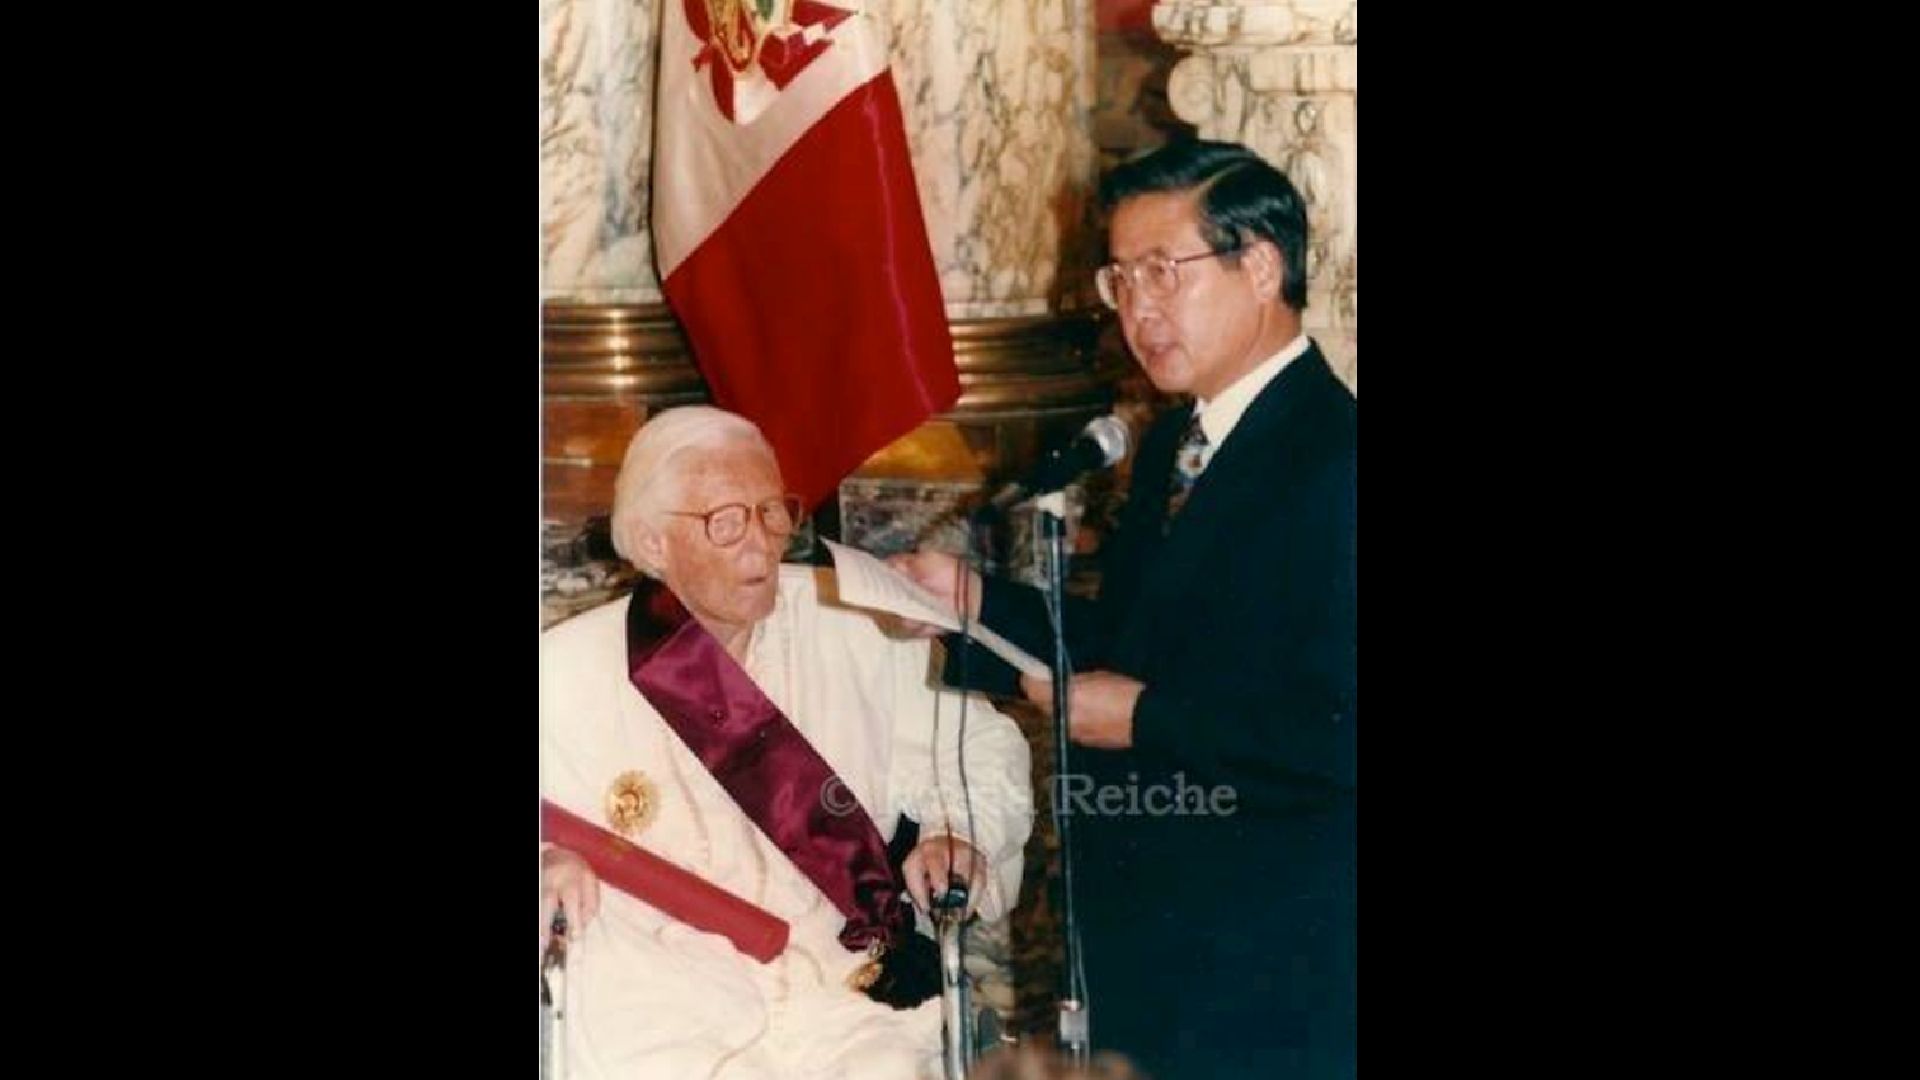 María Reiche recibiendo un reconocimiento 1993 por el entonces Presidente Alberto Fujimori. (Asociación María Reiche)